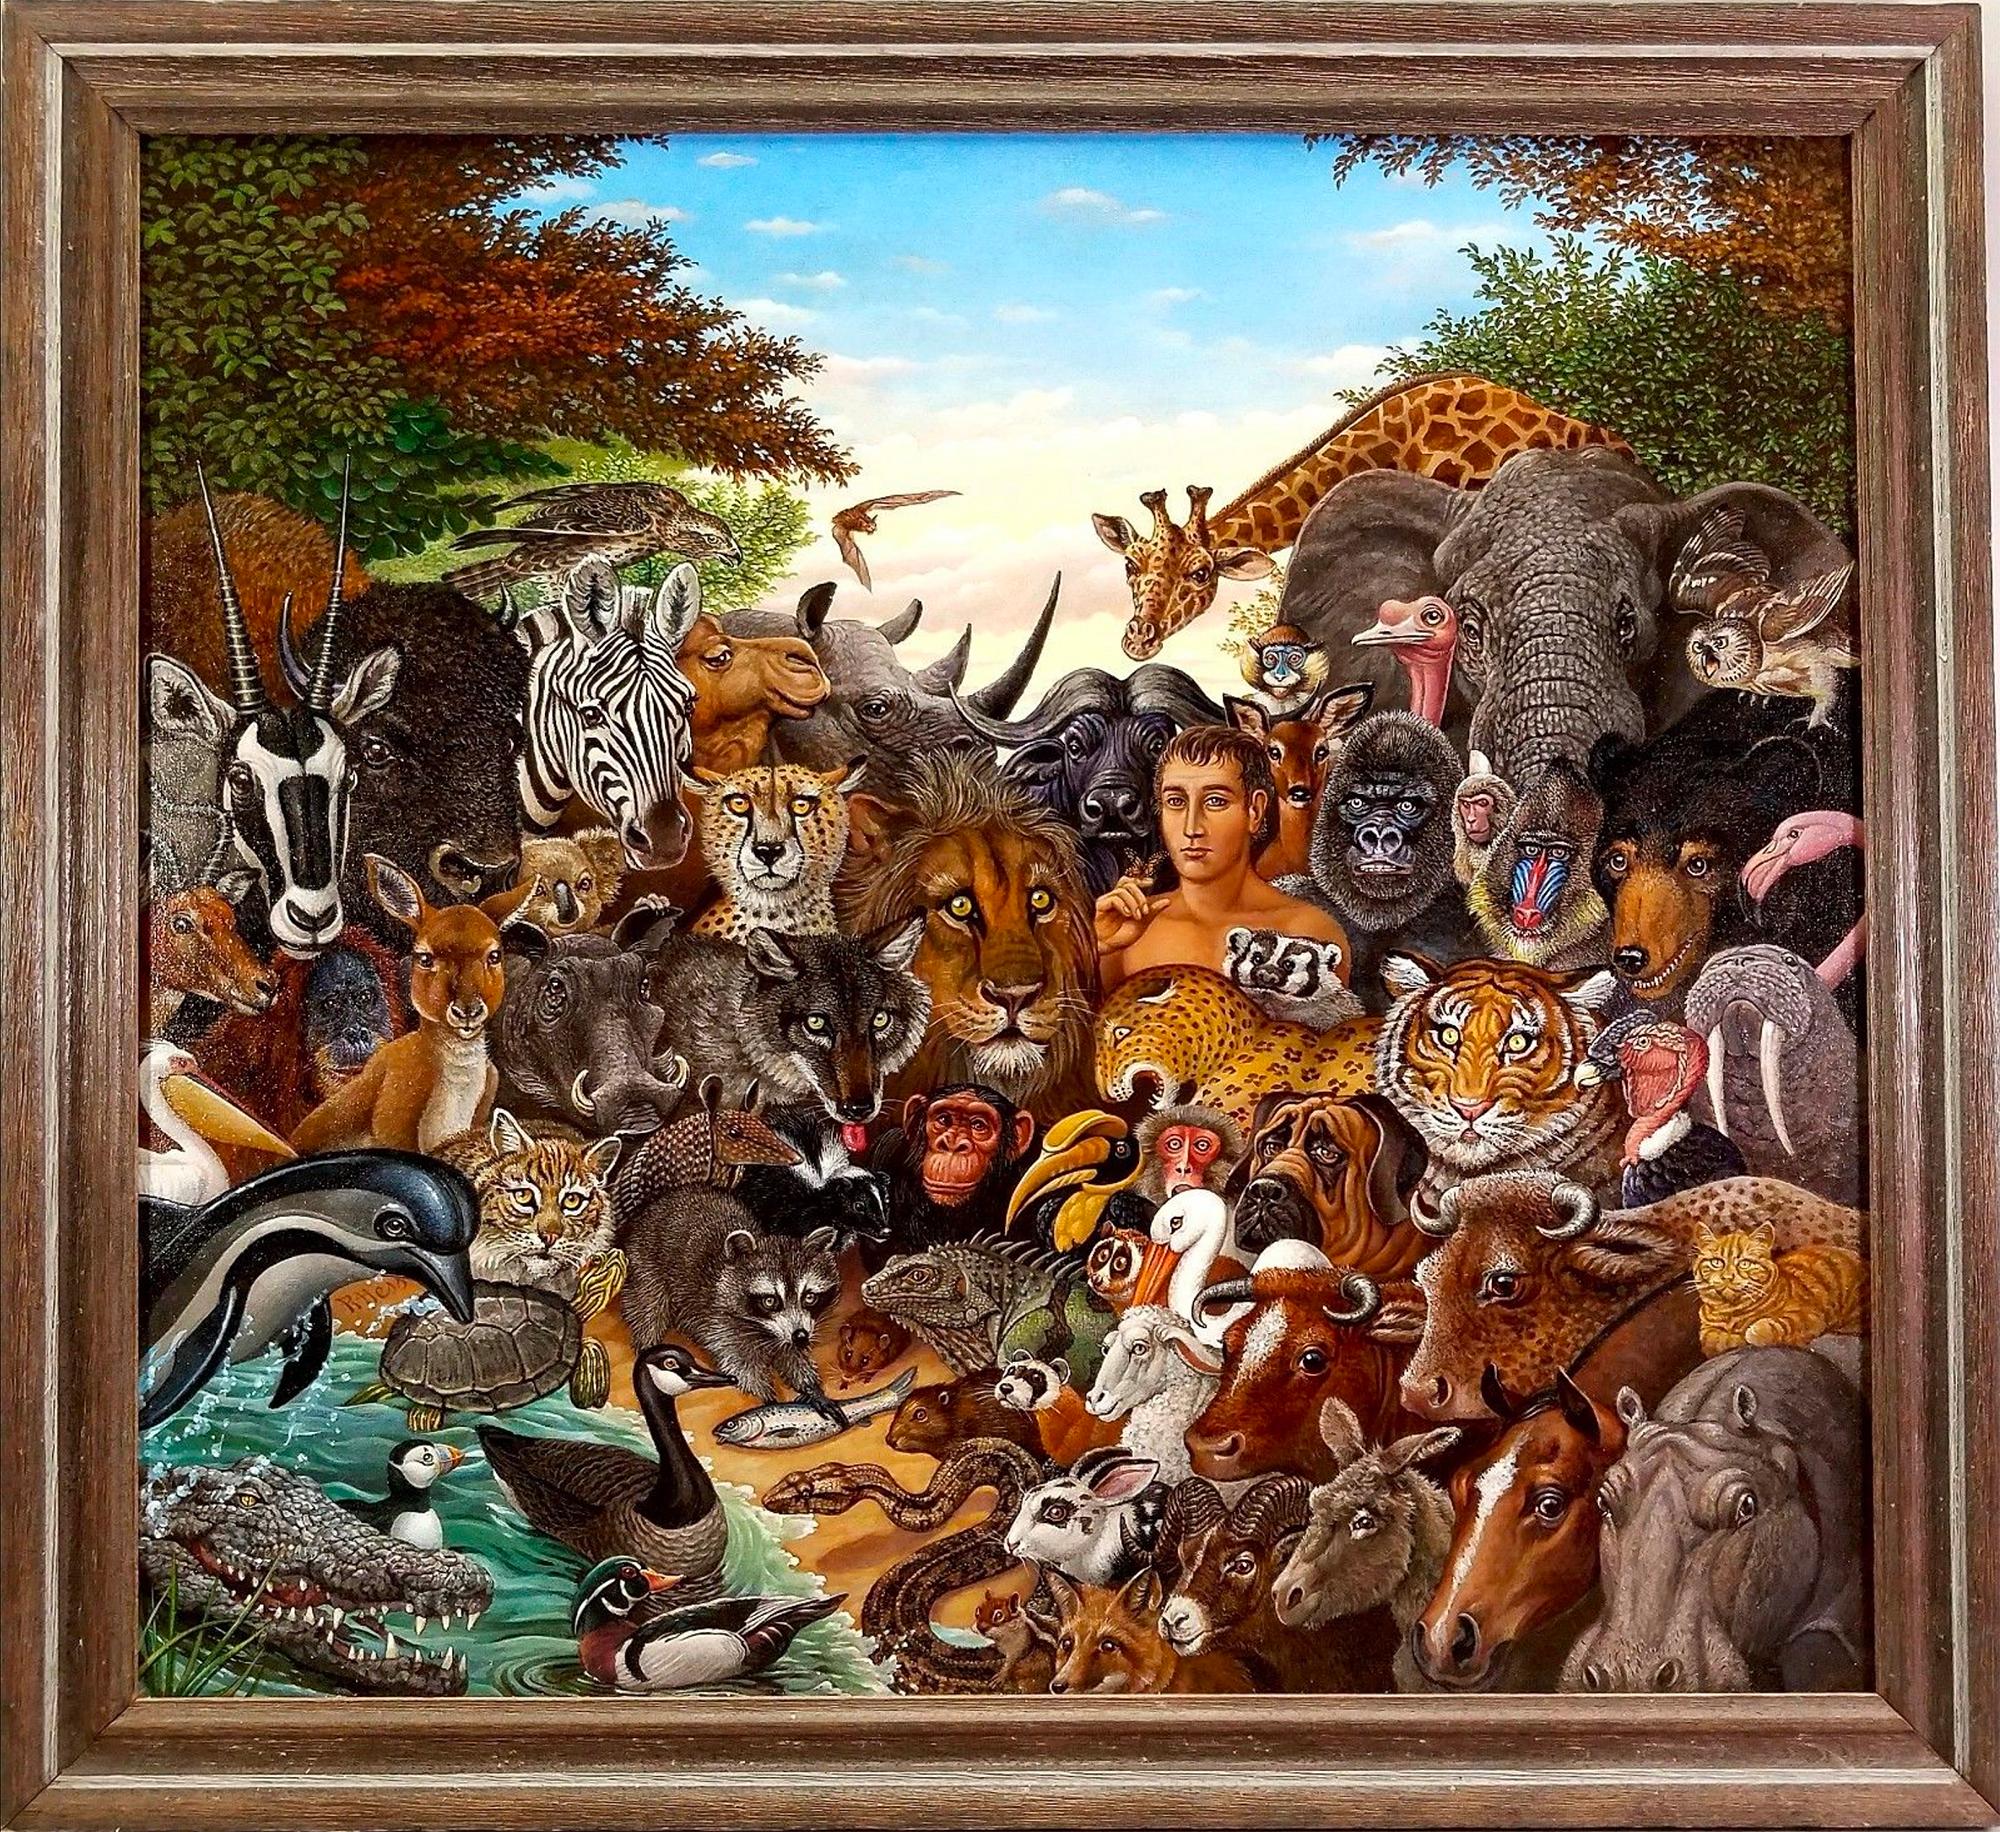 Tierreich, Zebra, Büffel, Löwe, Giraffen, Elefant, Affen, Tiger  Gorilla – Painting von Richard Hess